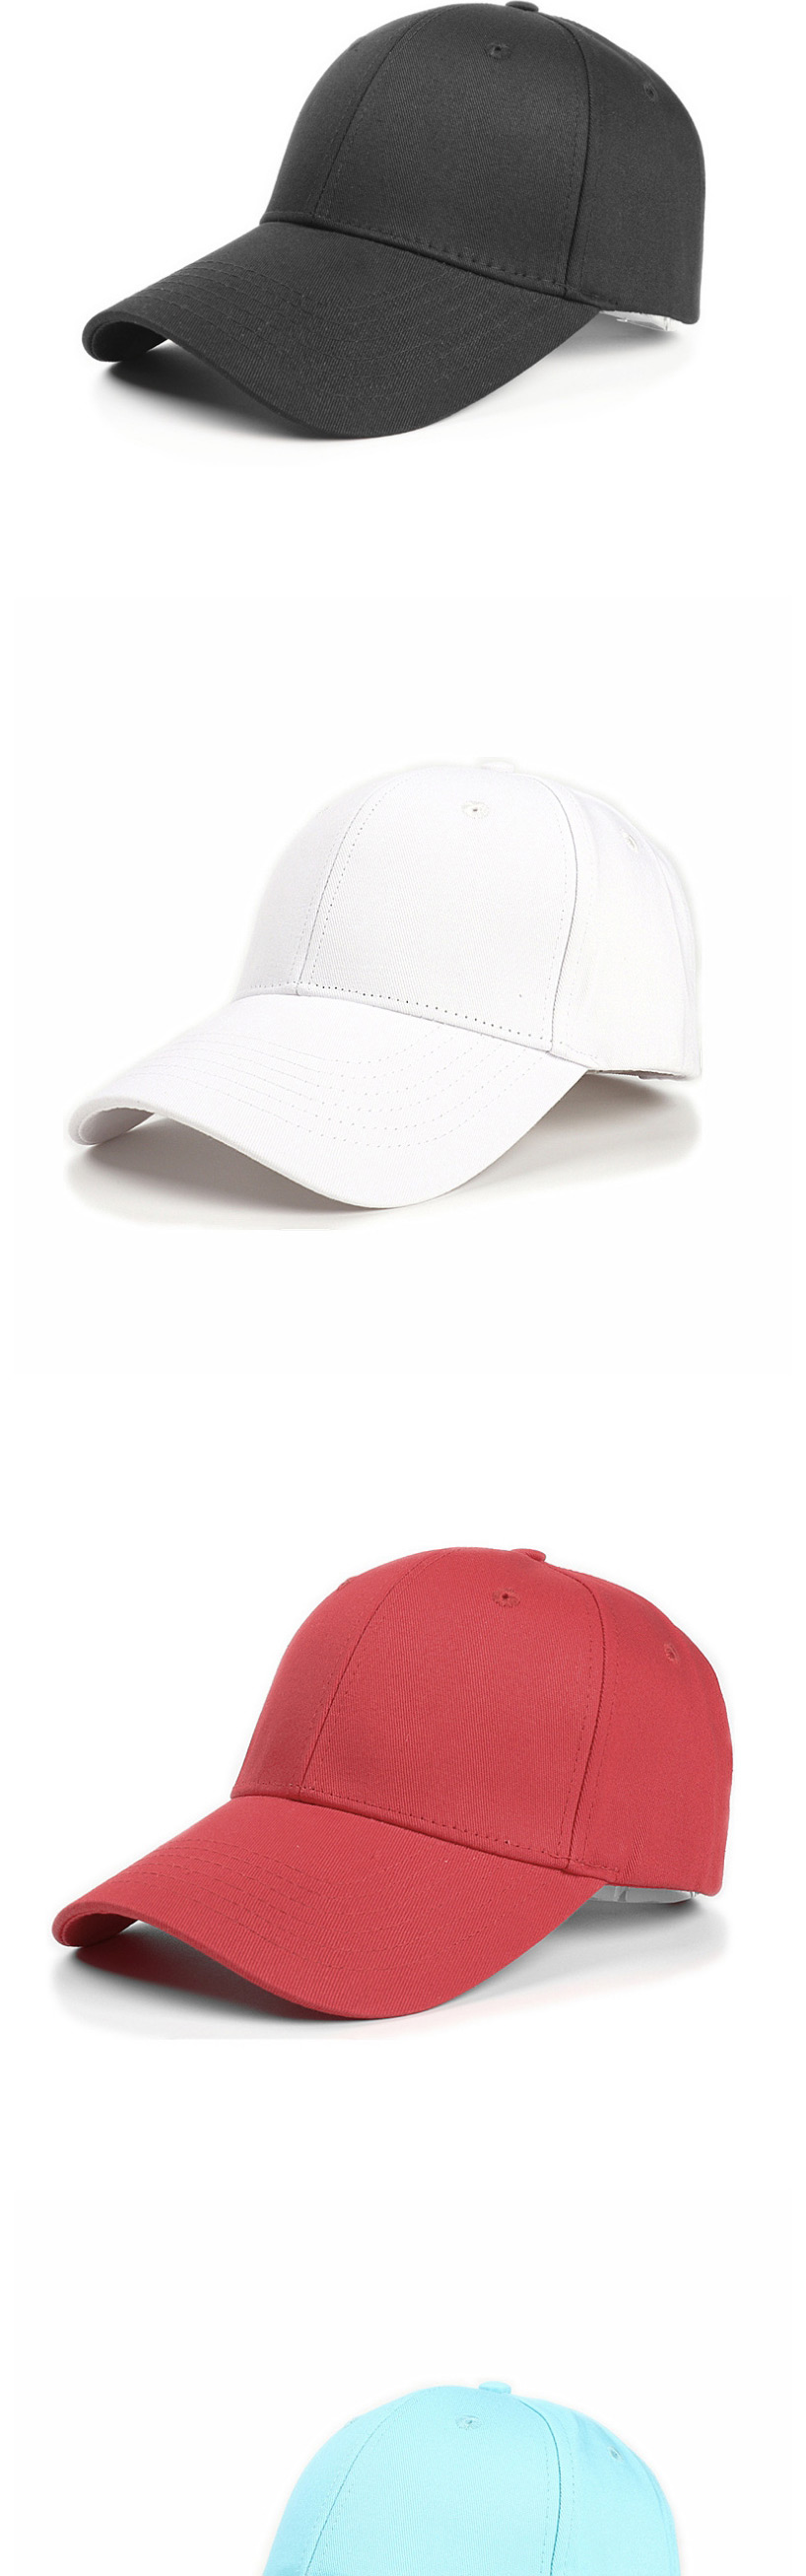 Fashion Red Cotton Hard Top And Long Brim Baseball Cap,Baseball Caps